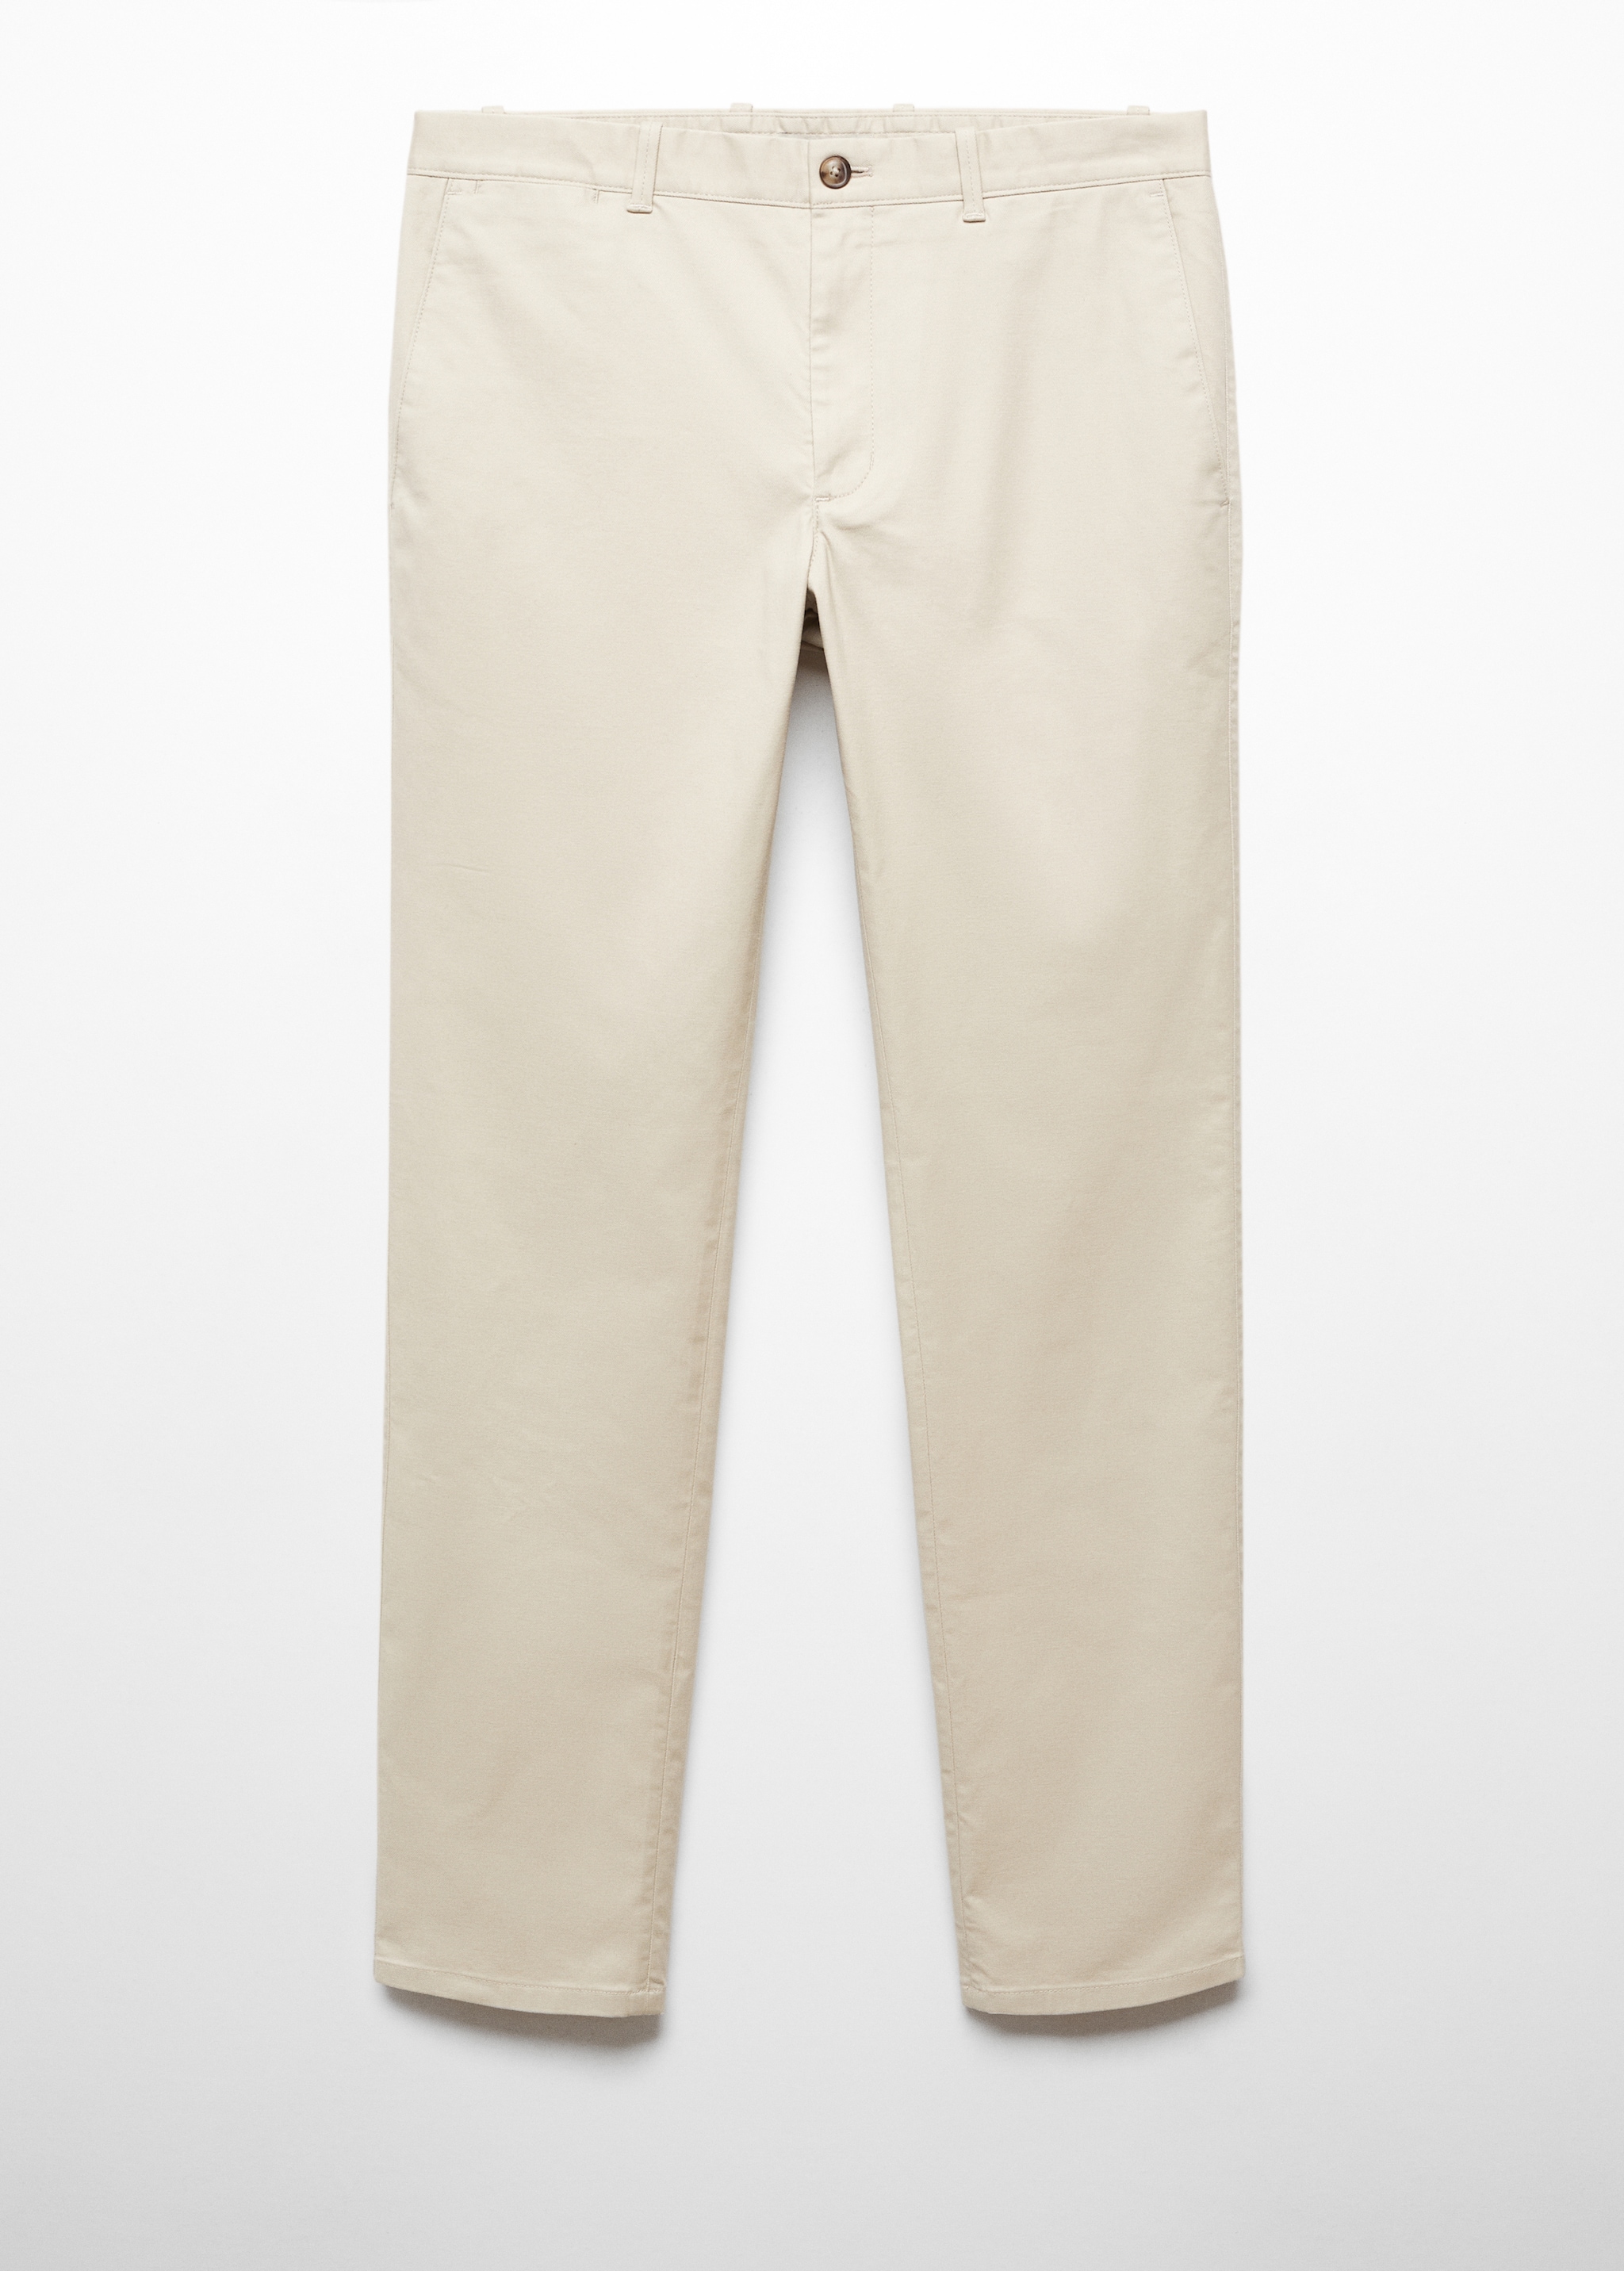 Pantalón chino slim fit sarga - Artículo sin modelo